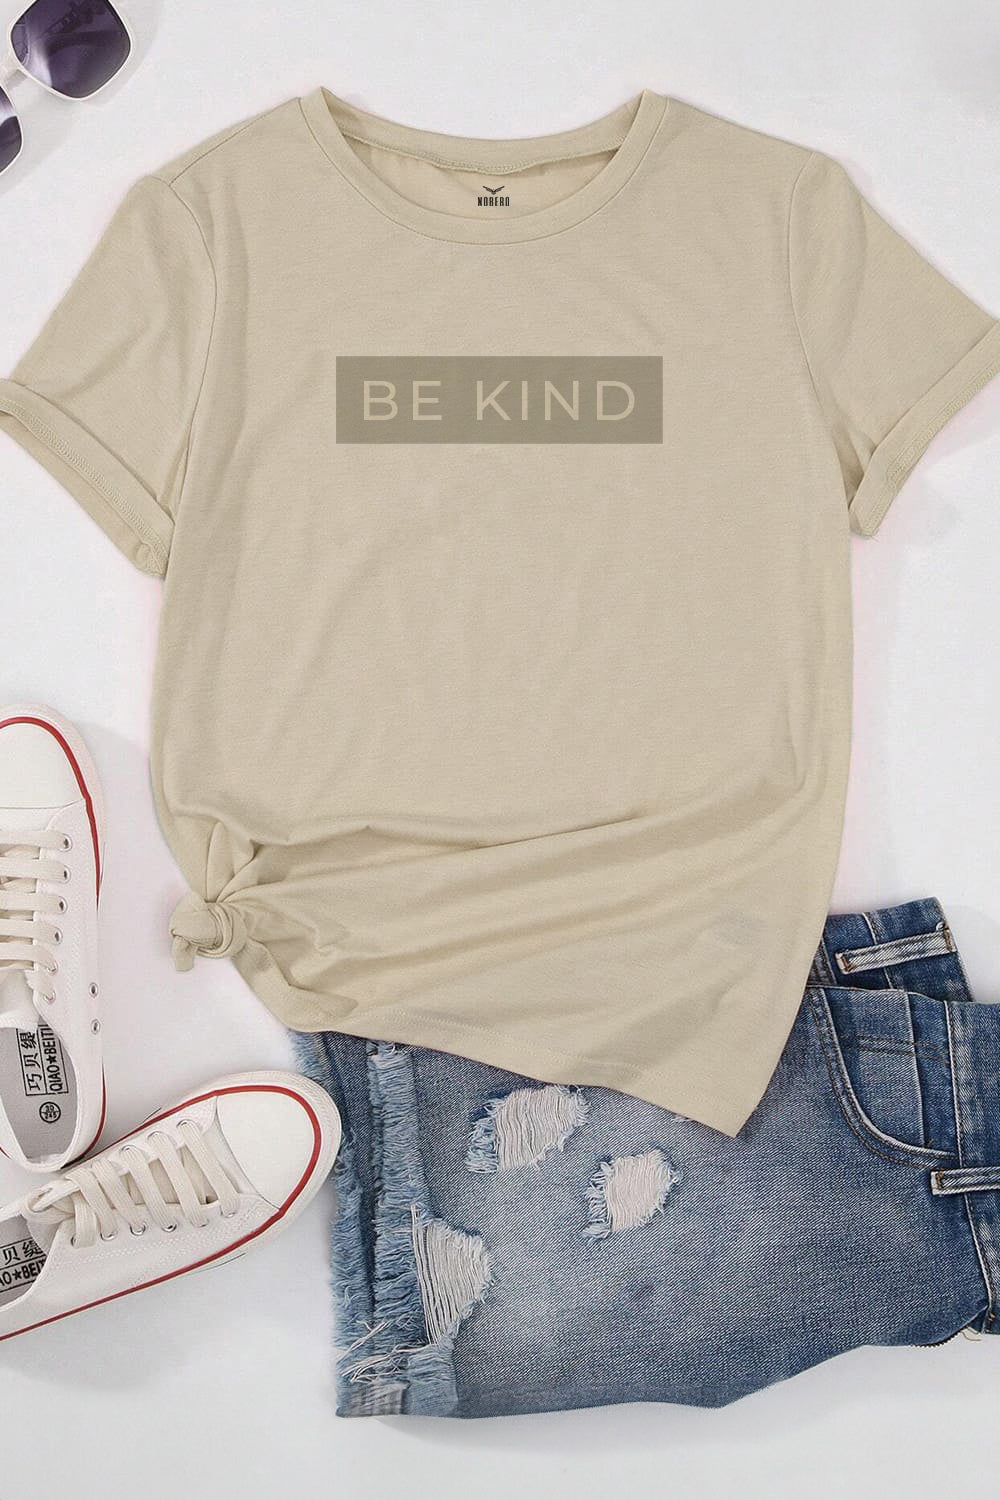 Boyfriend Be Kind Classic Fit T-Shirt